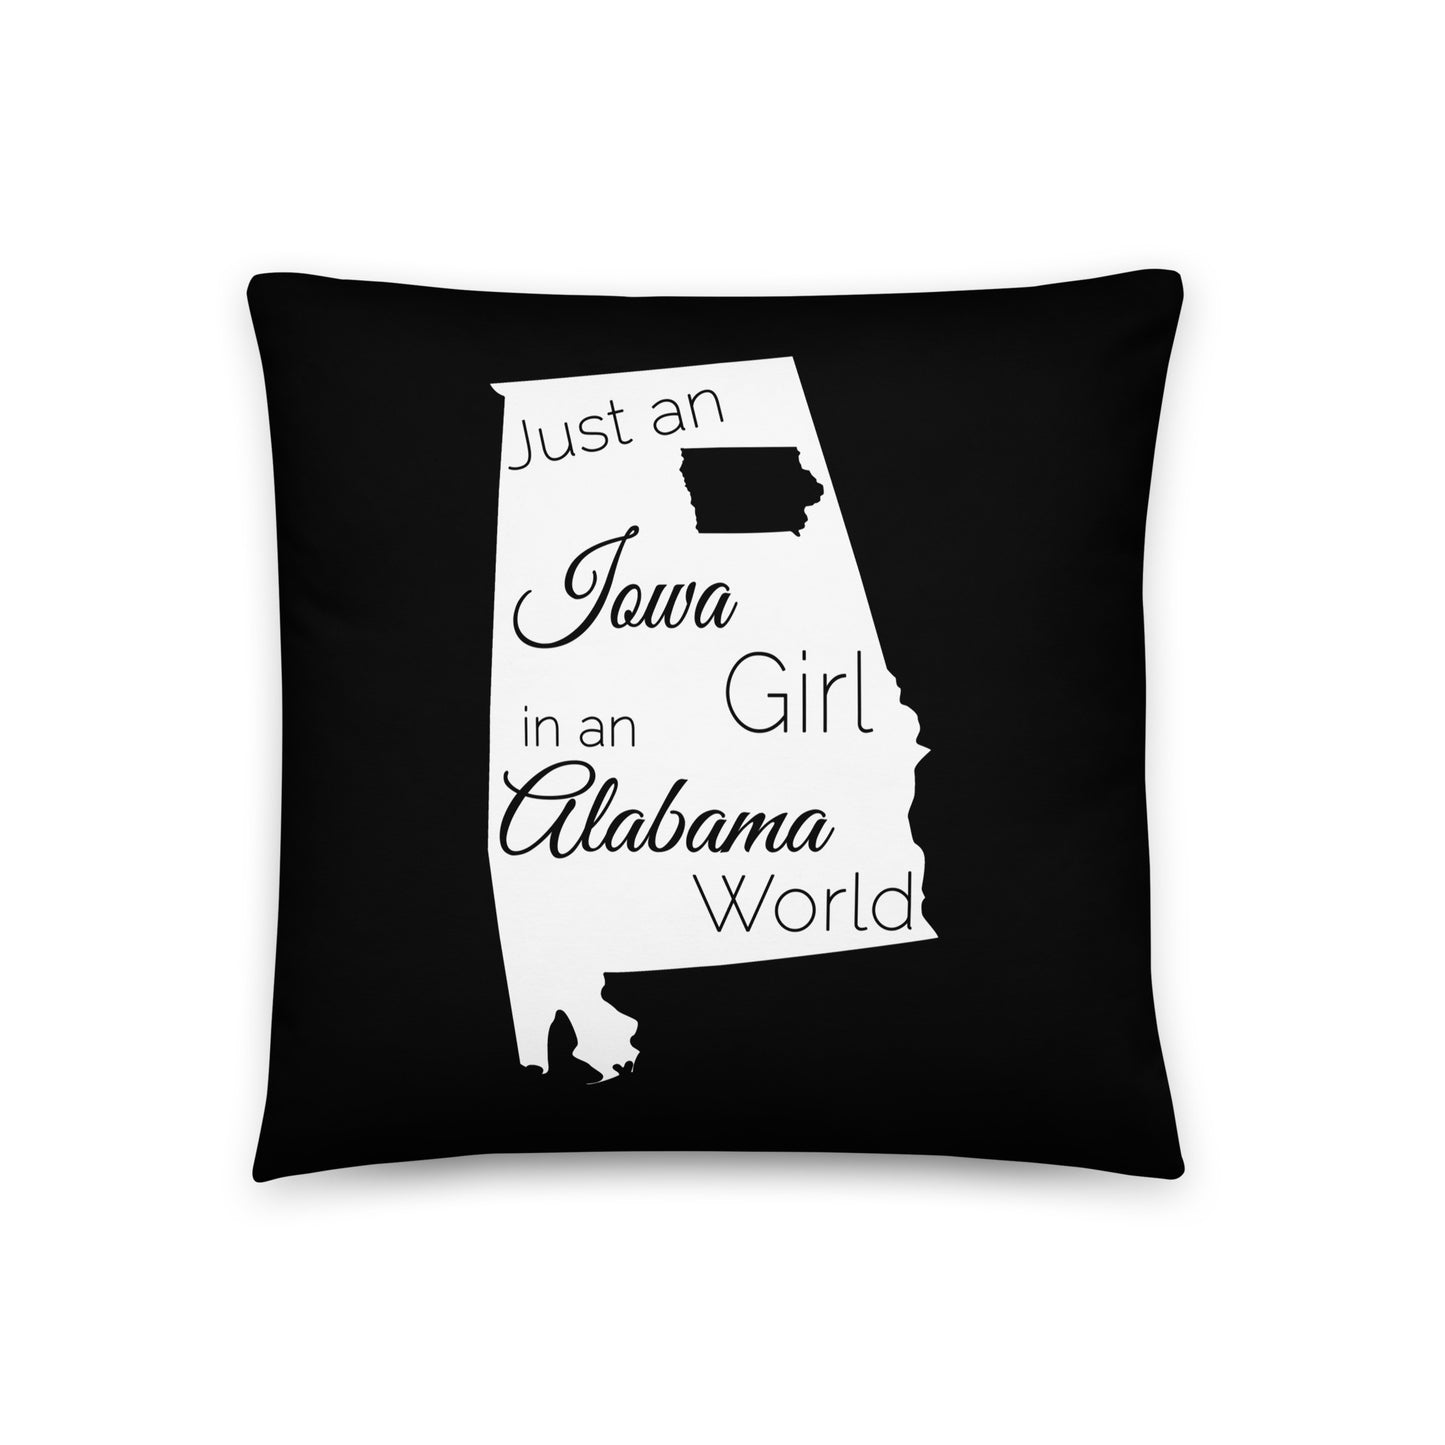 Just an Iowa Girl in an Alabama World Basic Pillow